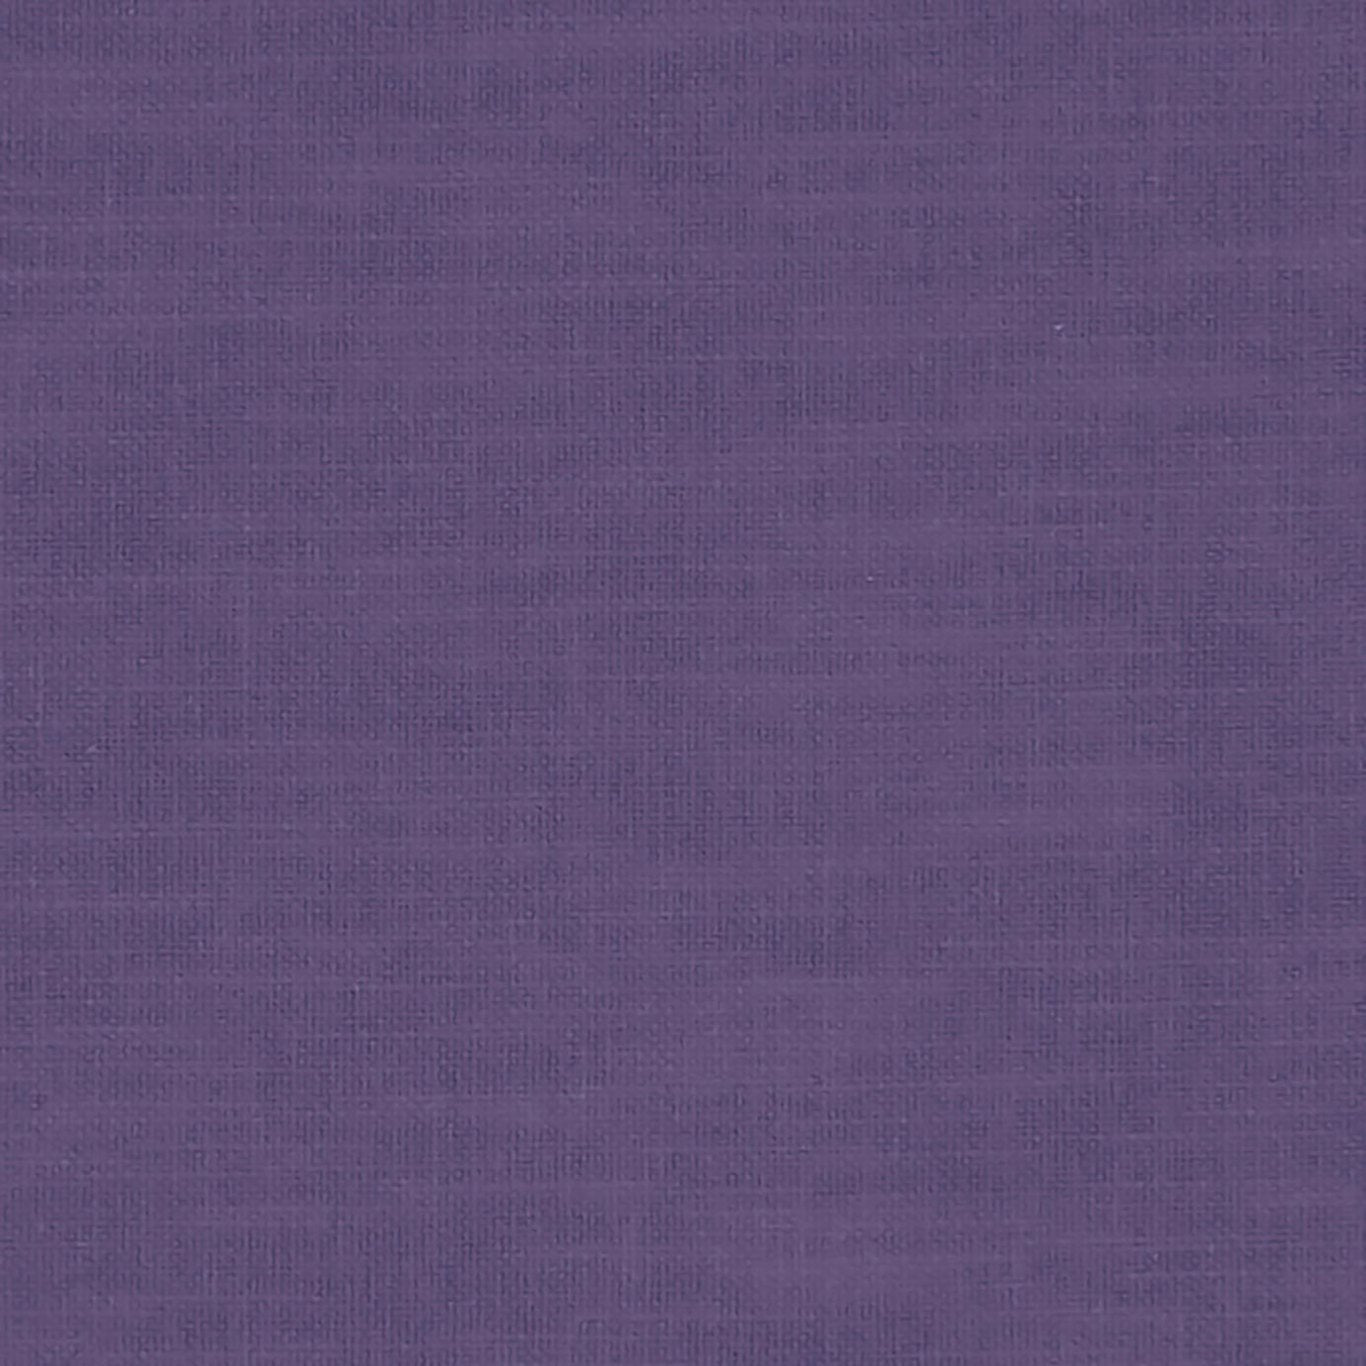 Amalfi Fabric by Clarke & Clarke - F1239/02 - Amethyst